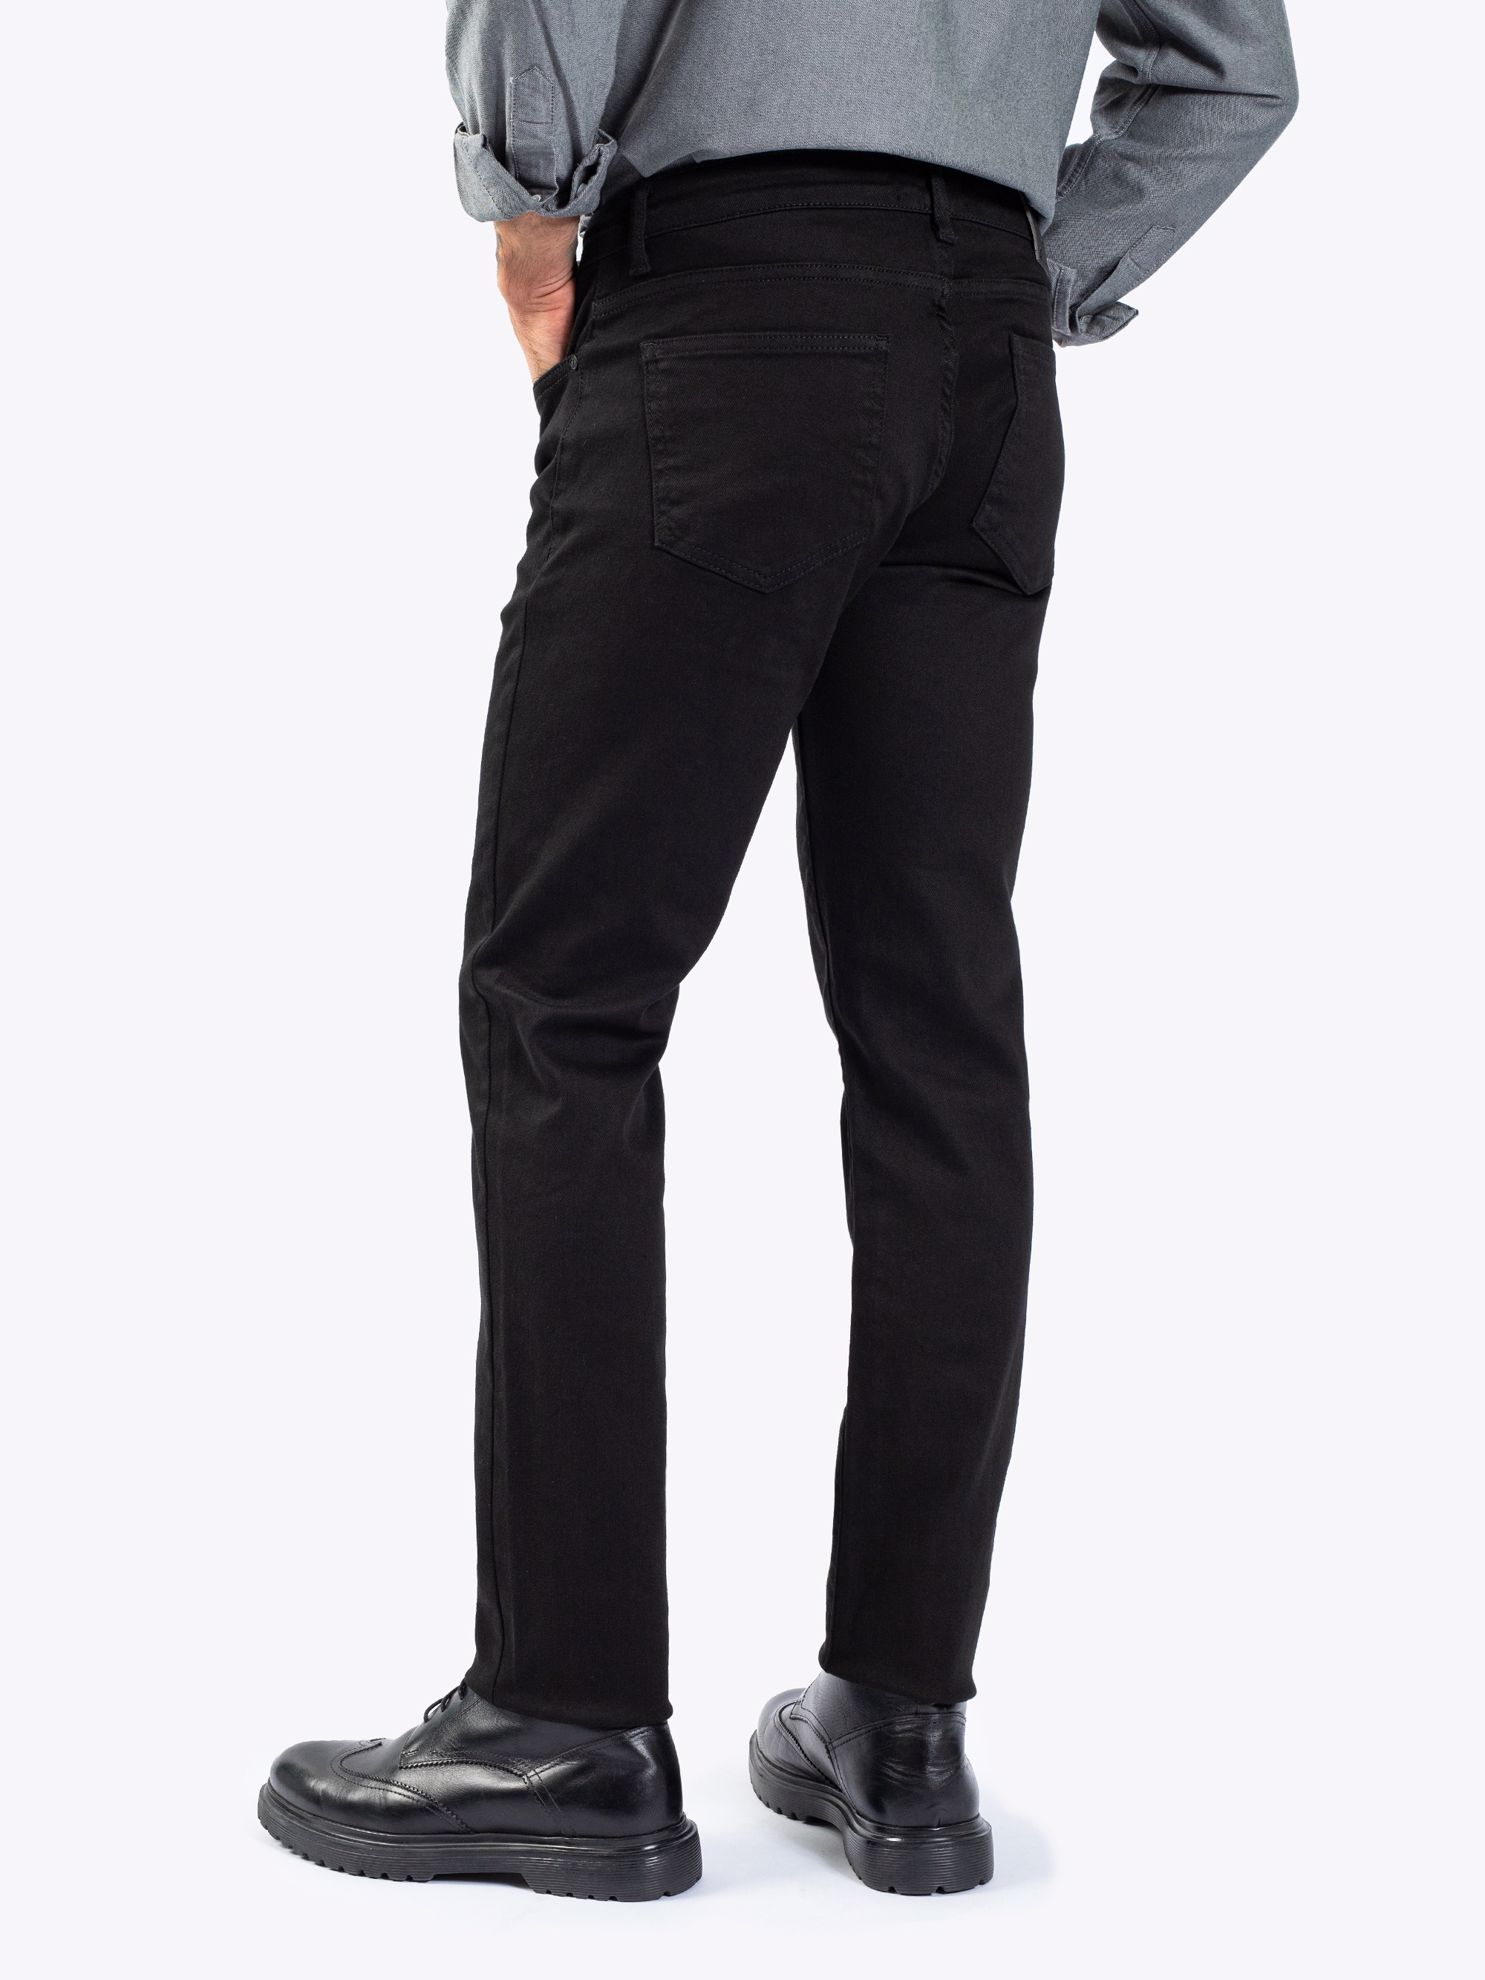 Karaca Erkek Jean-Siyah. ürün görseli